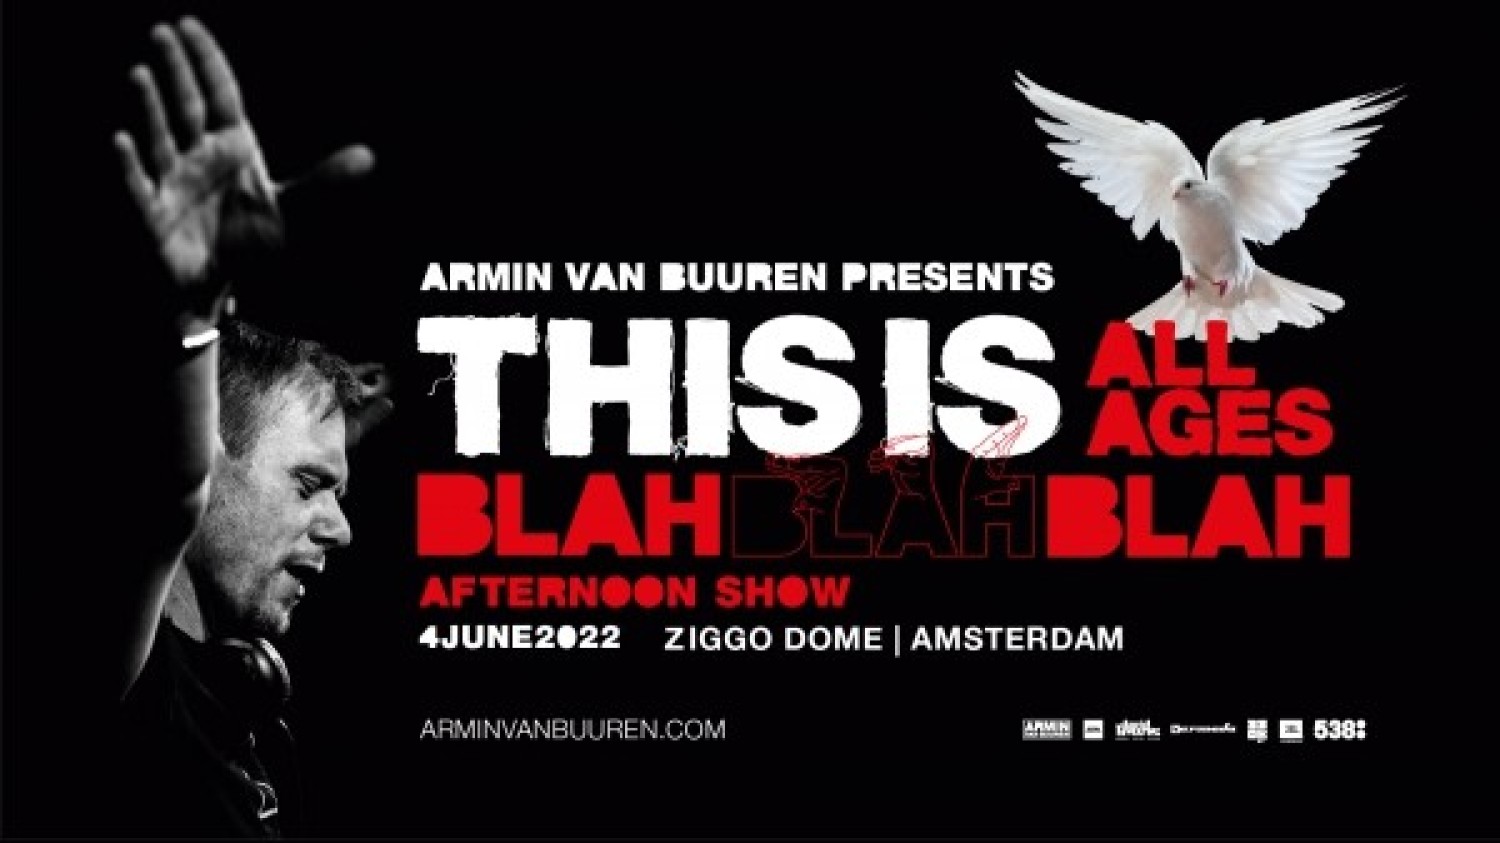 Armin van Buuren presents This Is Blah Blah Blah